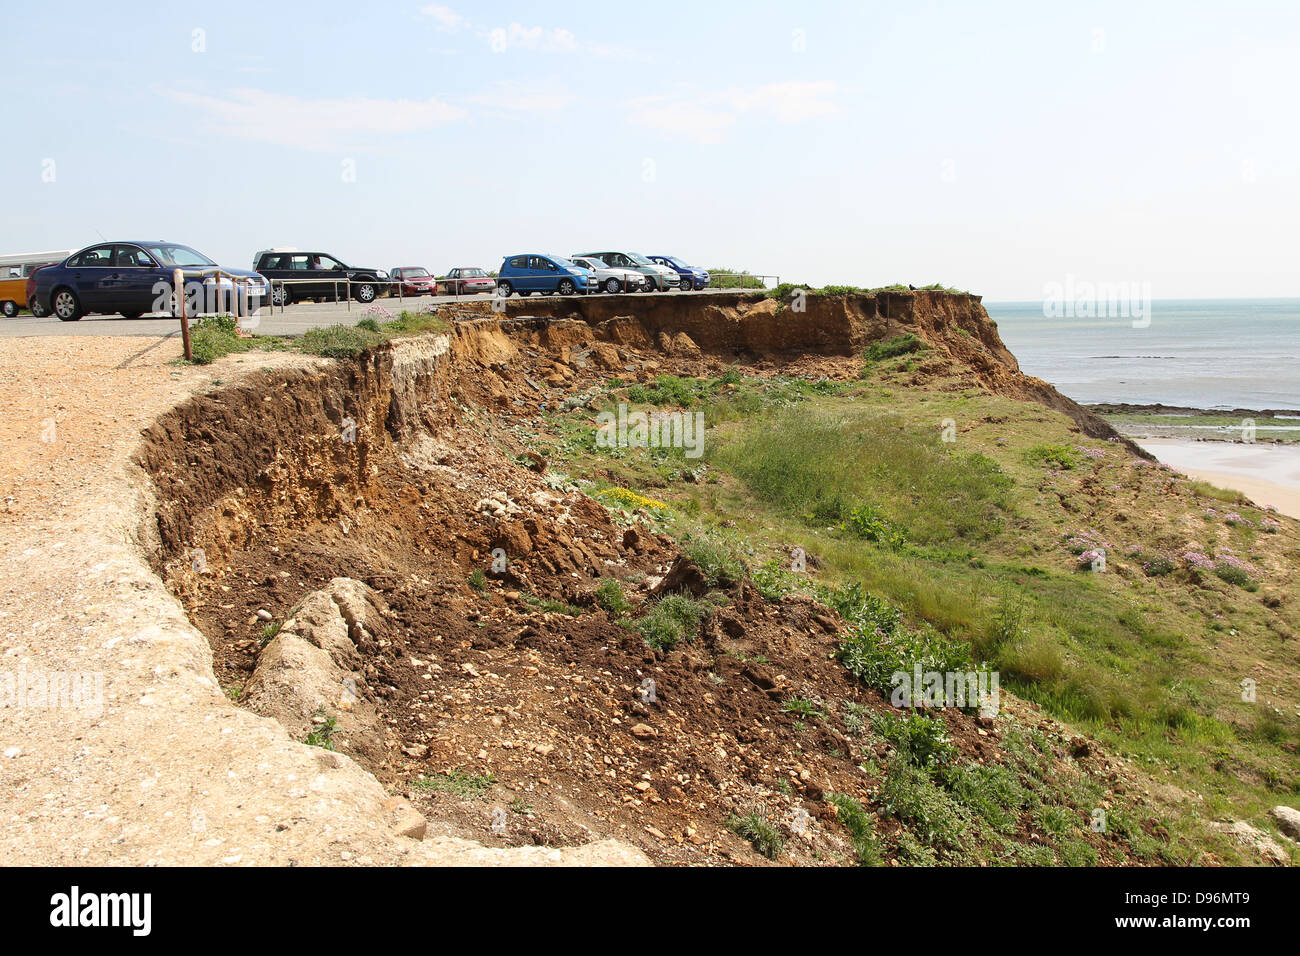 Compton bay parcheggio auto collassare verso la spiaggia a causa di erosione. Foto Stock